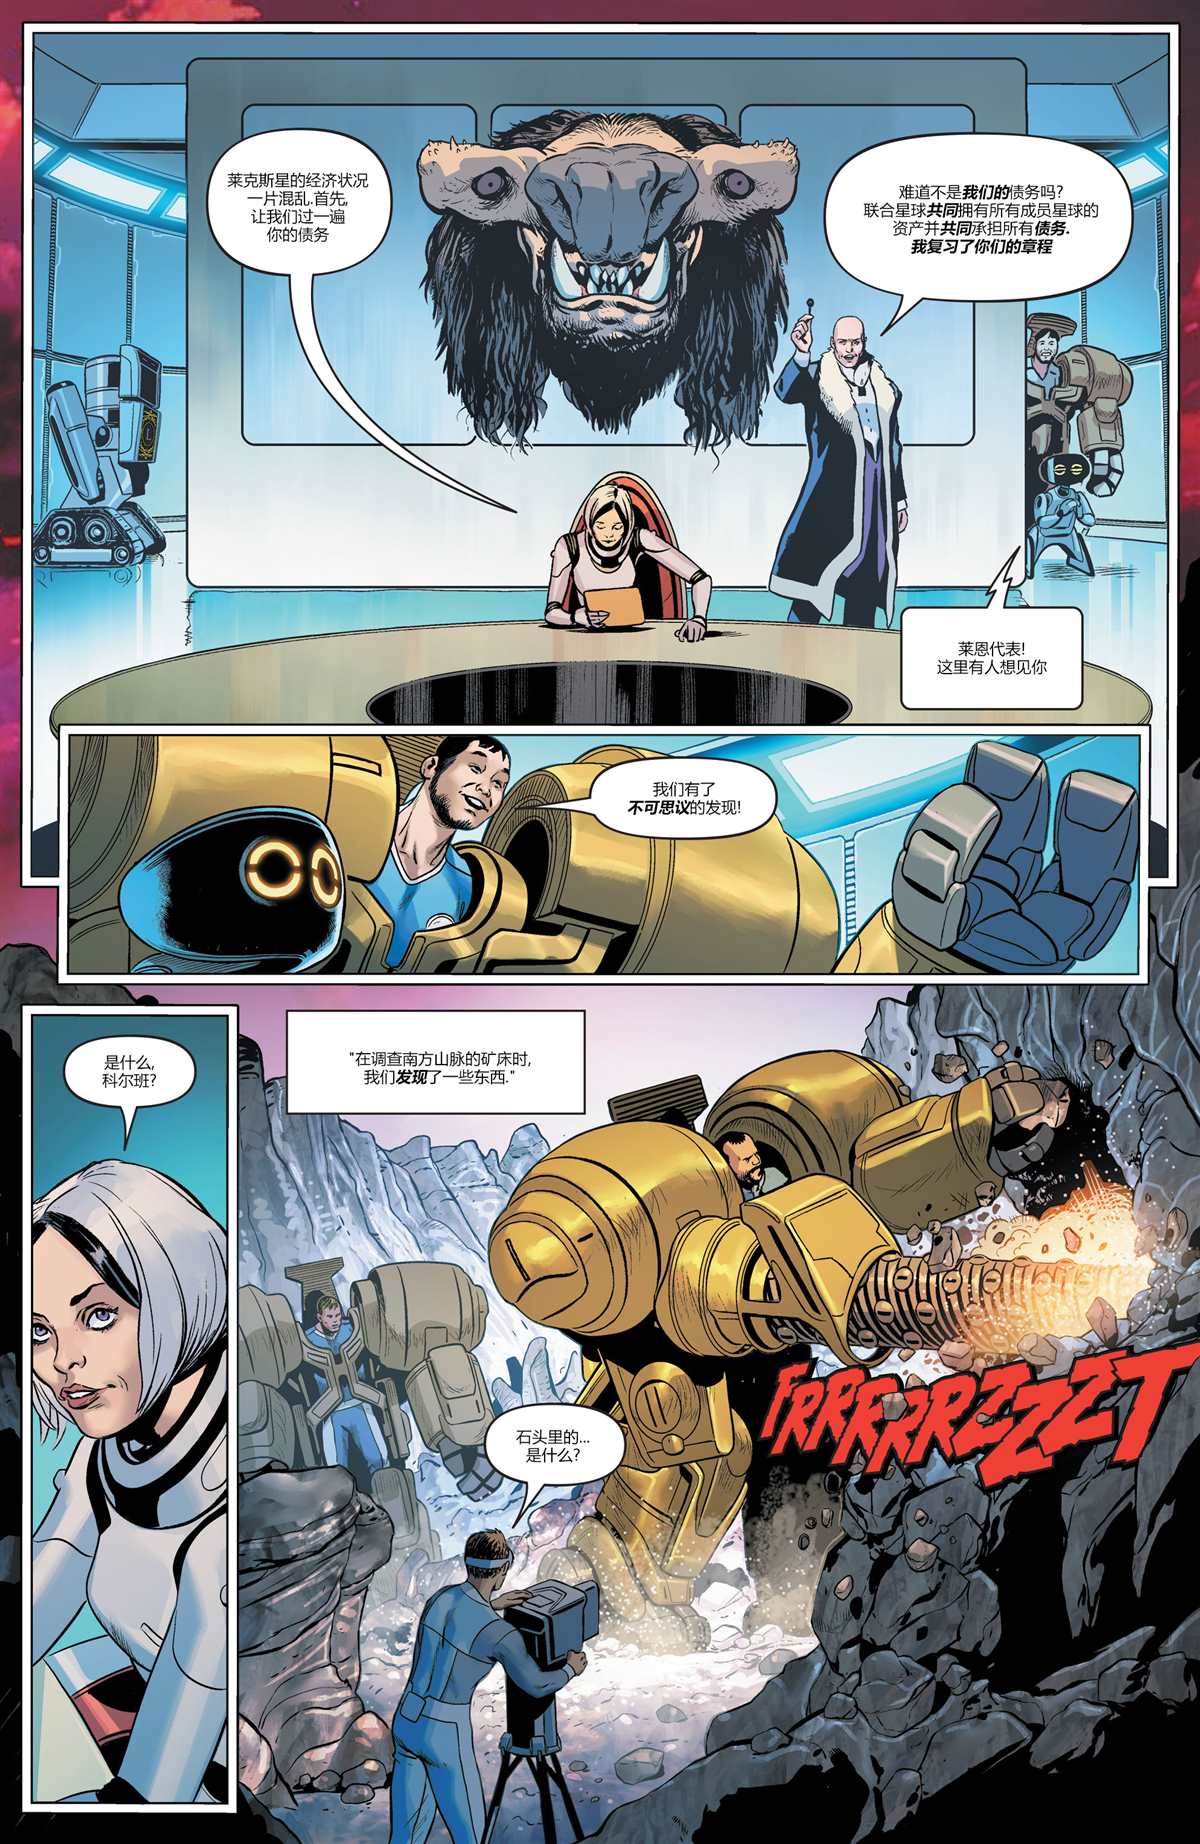 未来态-超人大战霸王莱克斯#27